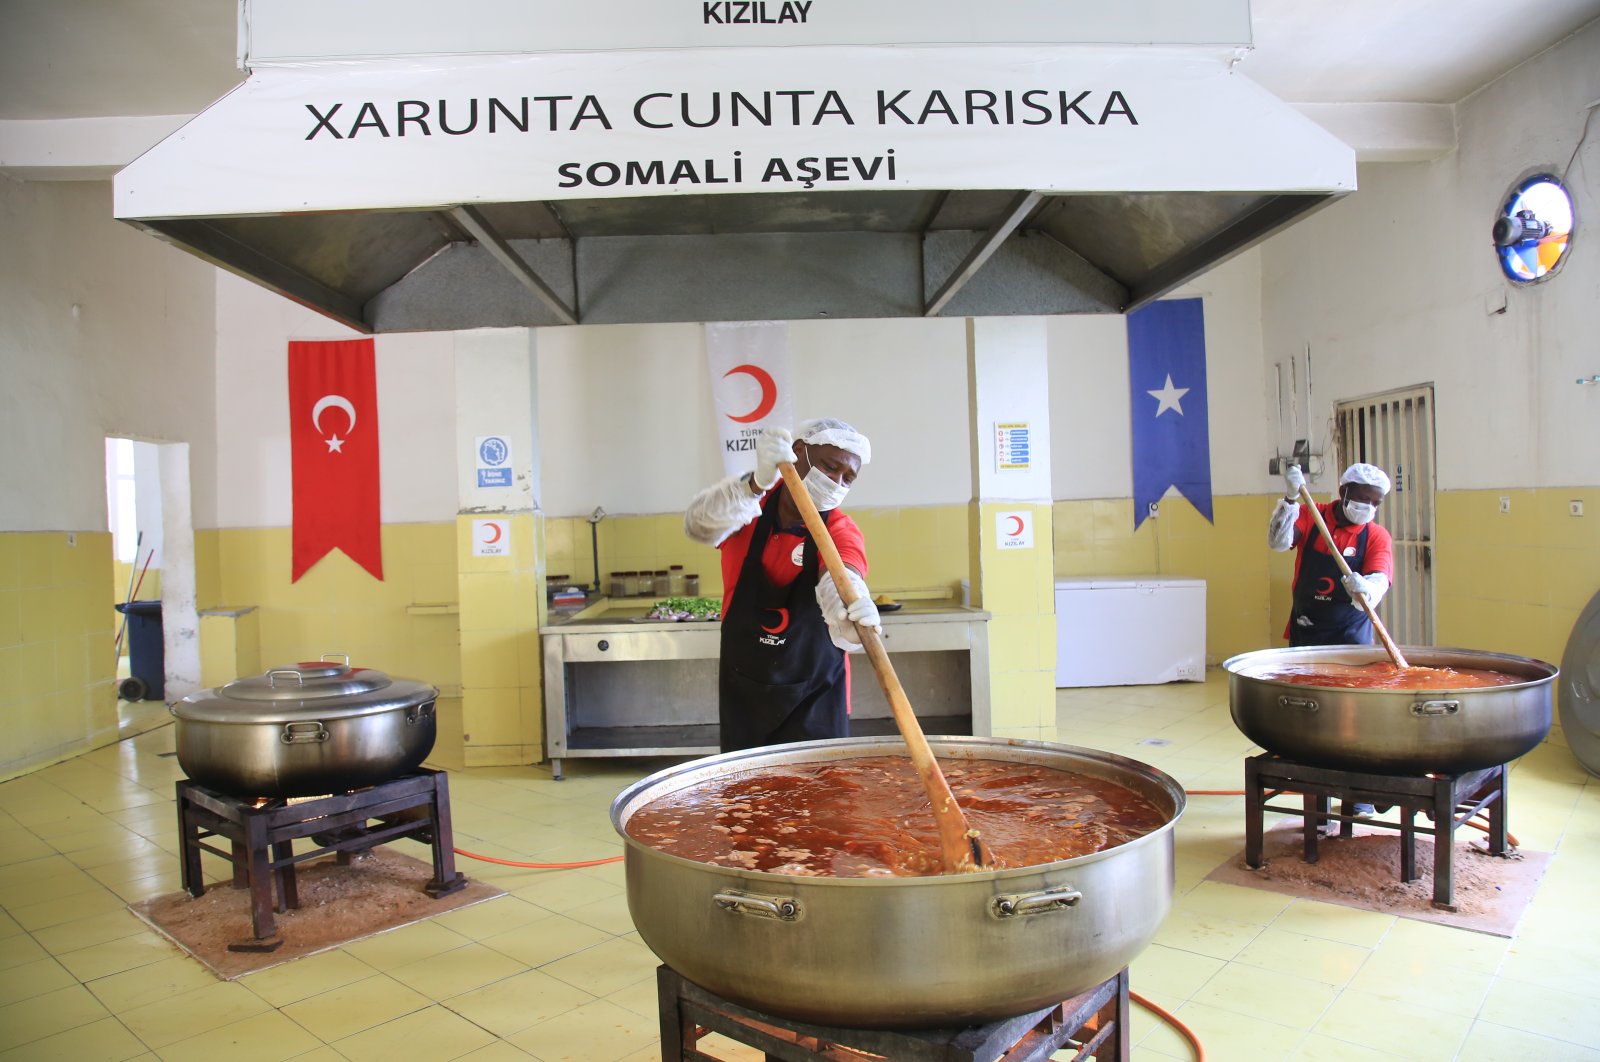 Bulan Sabit Merah Turki memberi makan orang-orang Somalia yang membutuhkan dari dapur